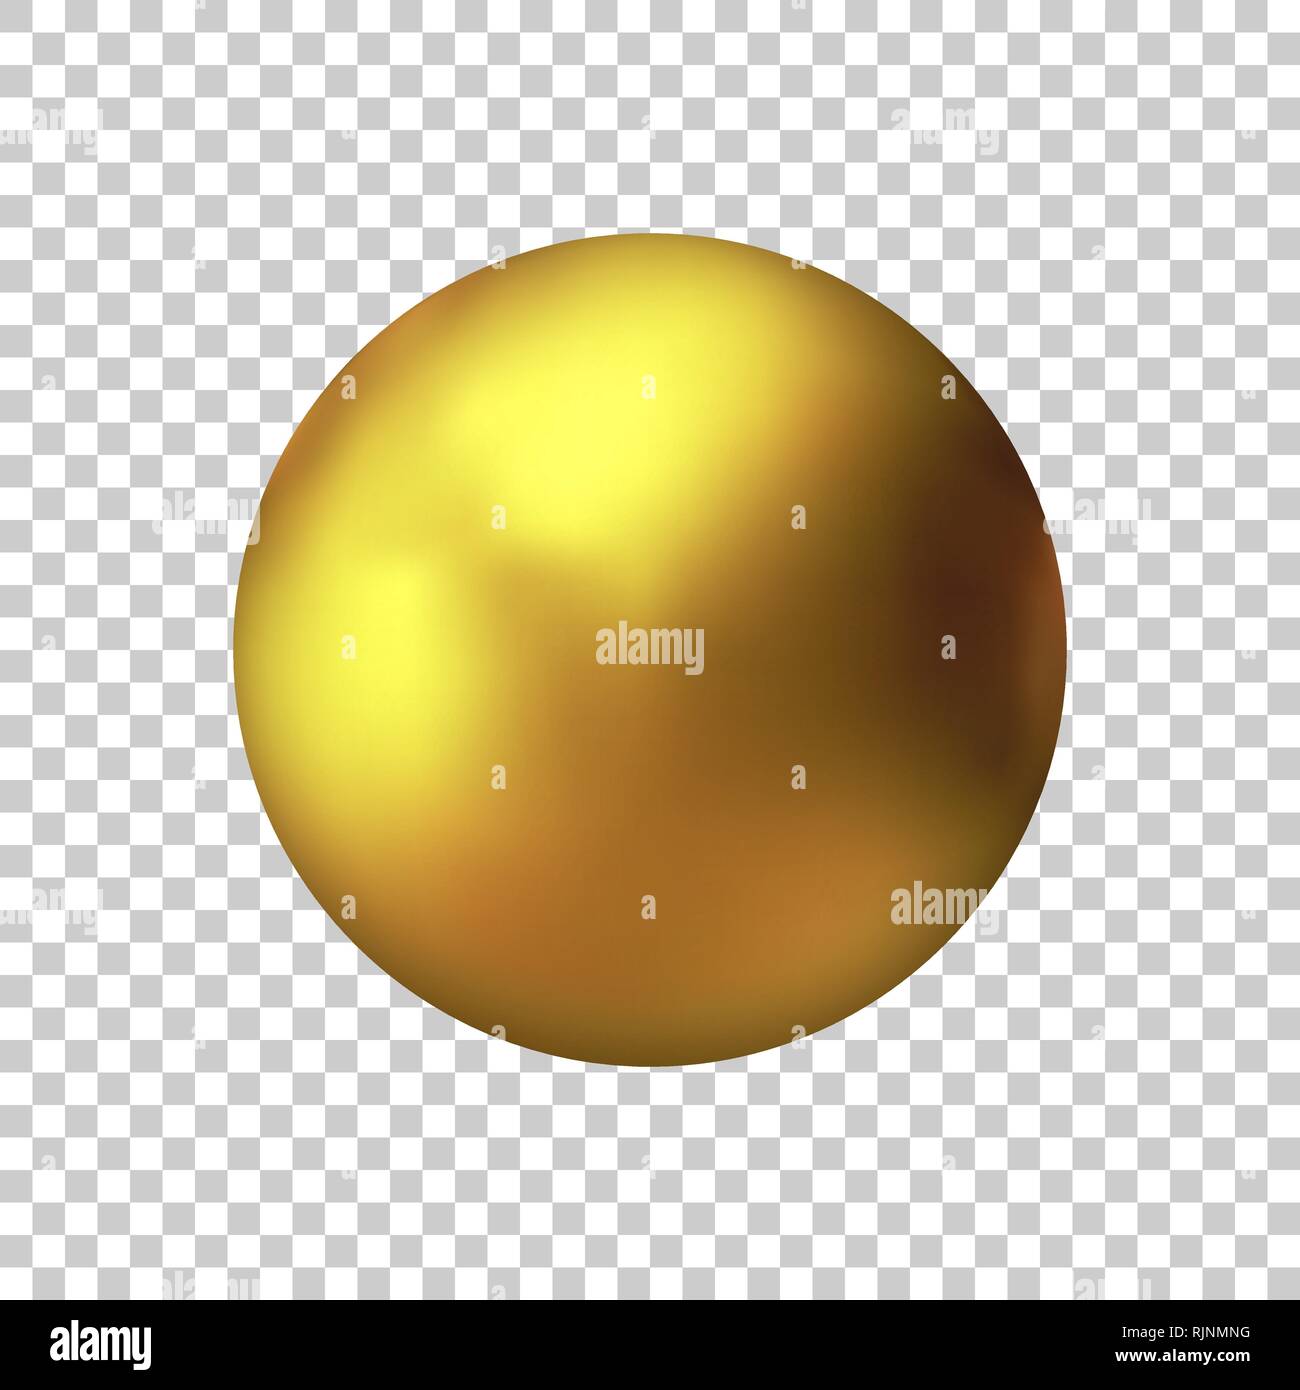 Realistische gold metall Kugel, Vektor Golden Ball. Stock Vektor